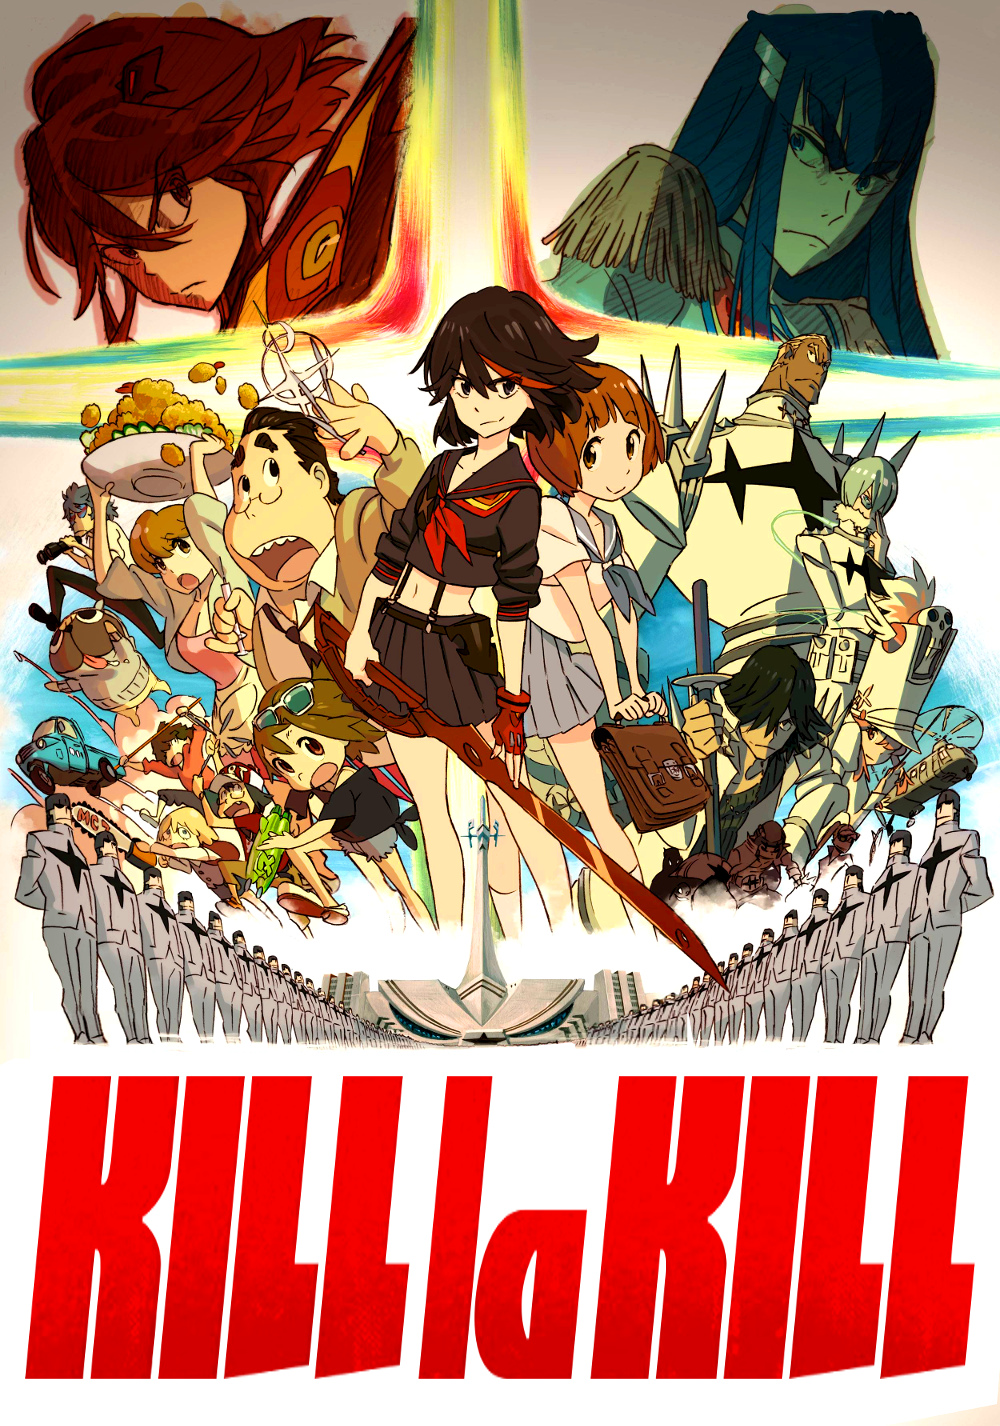 Kill la Kill (TV Series 2013–2014) - IMDb